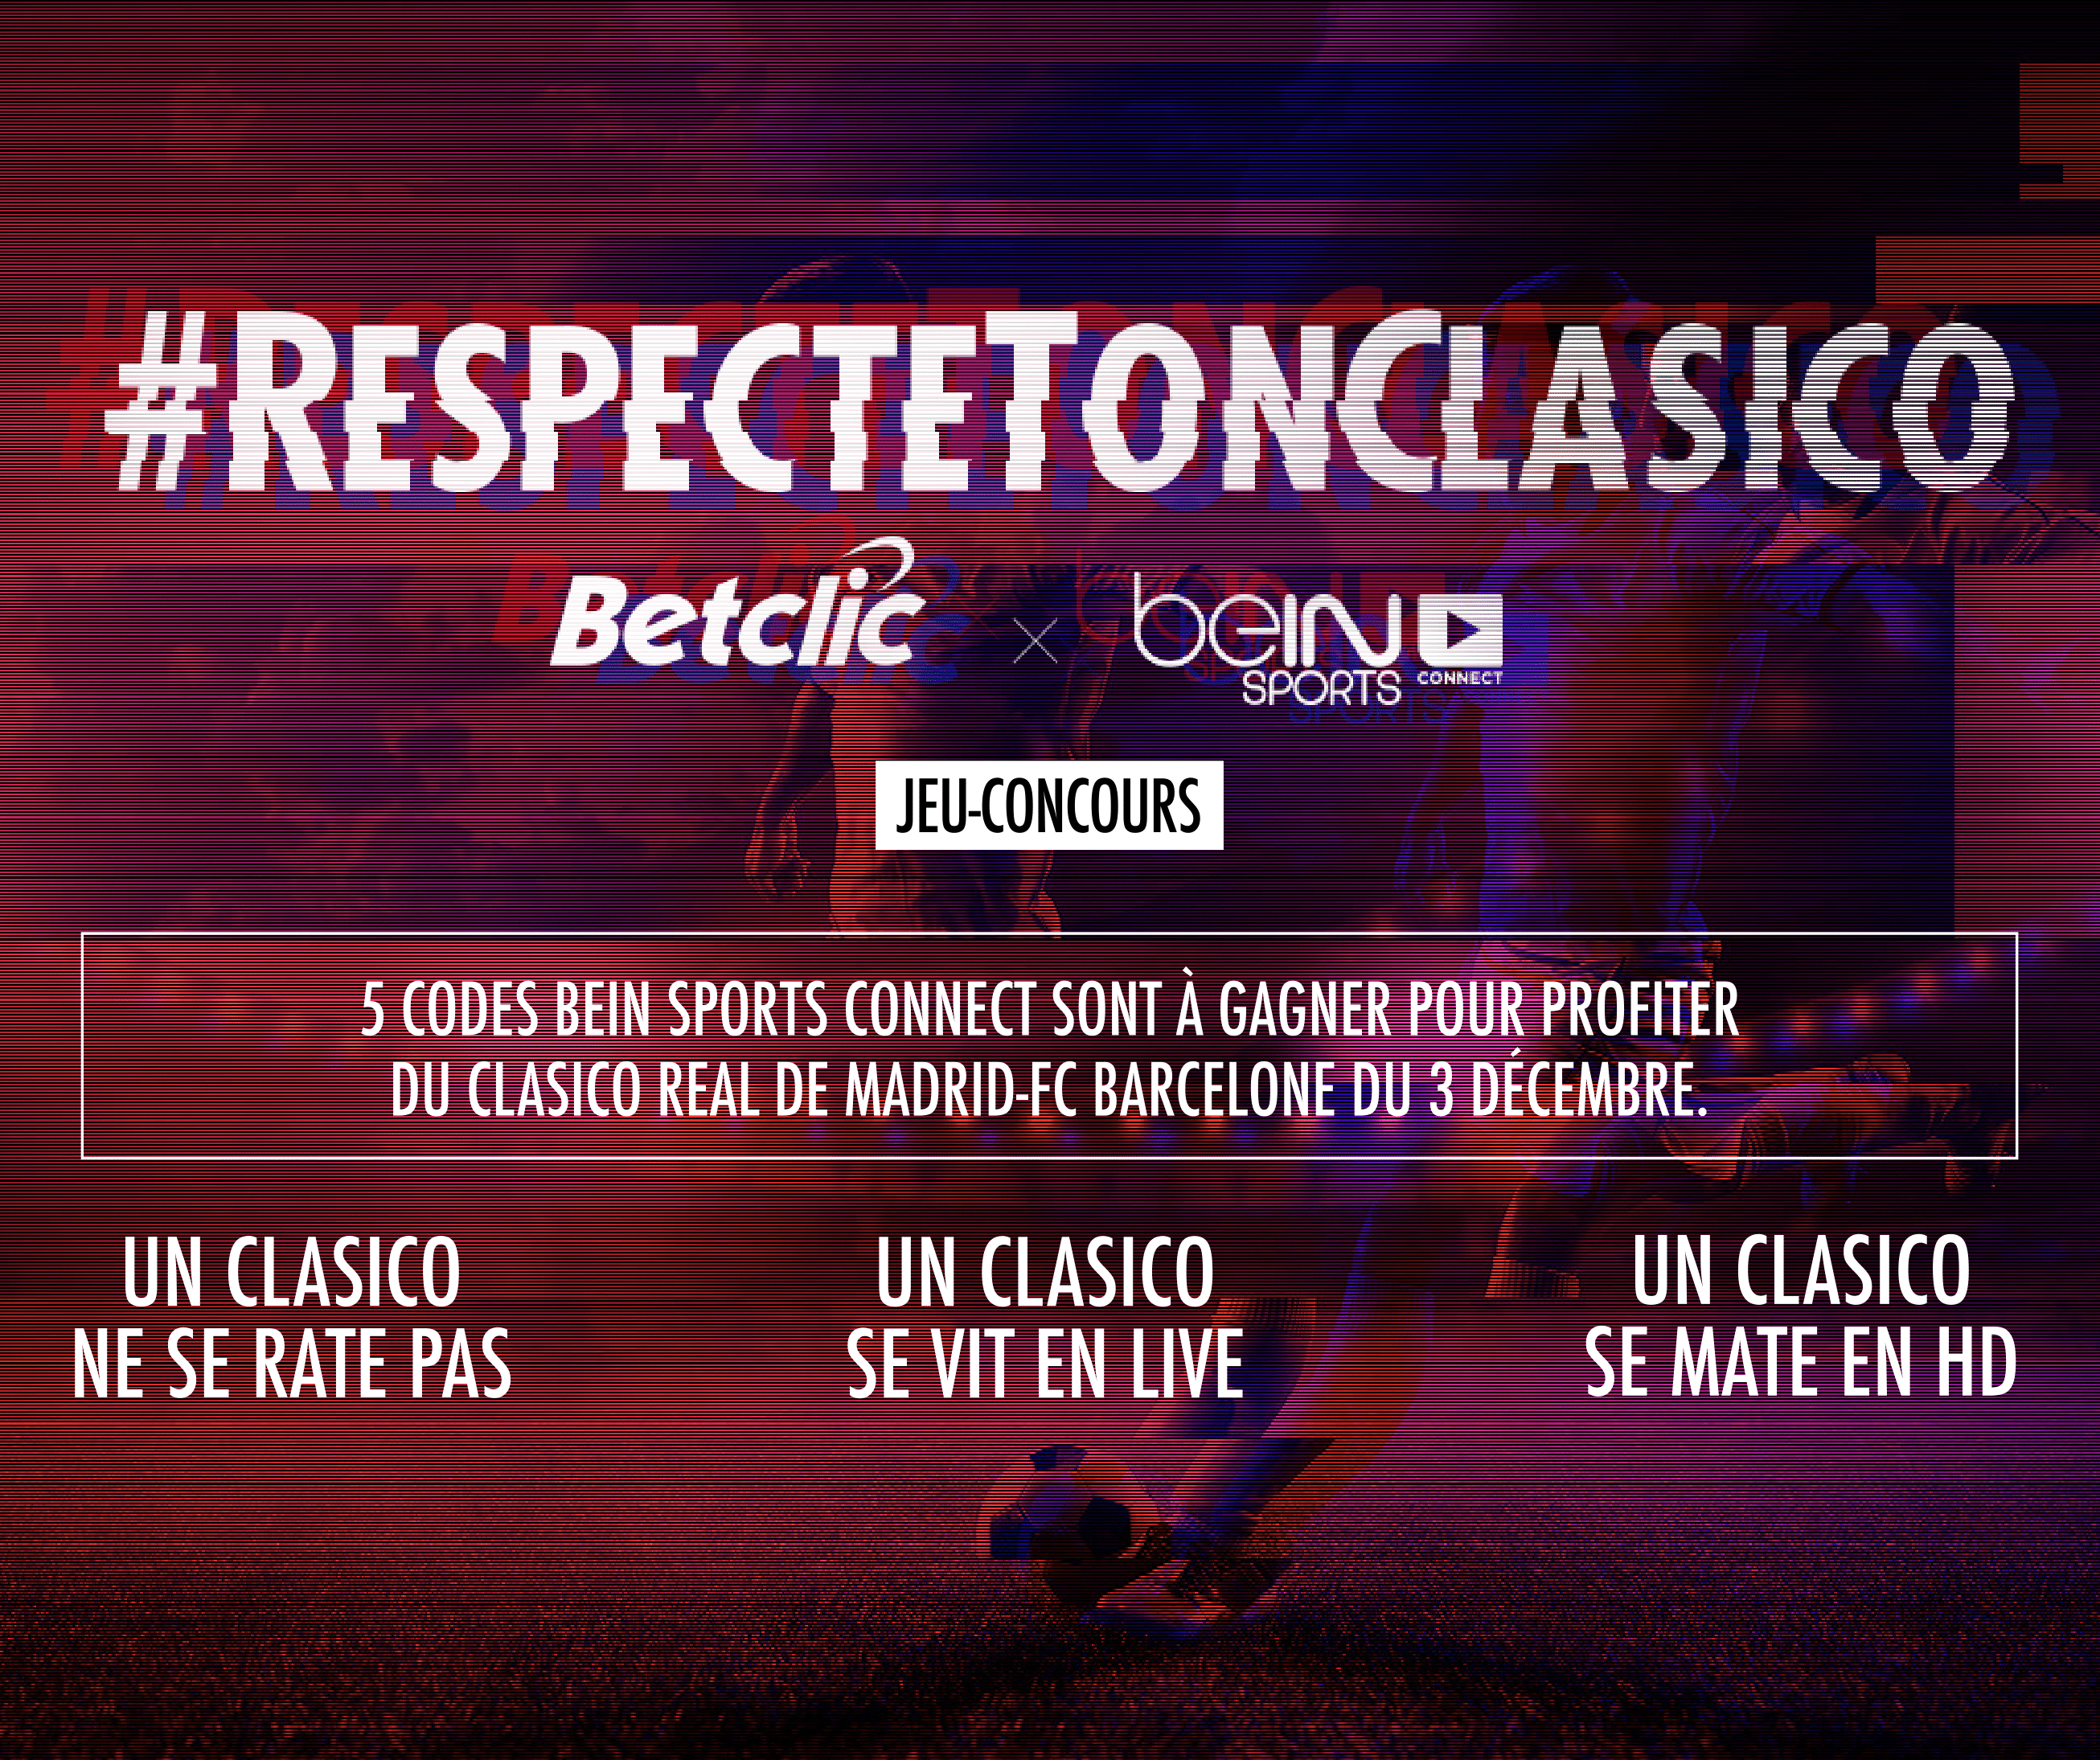 clasico-betclic-respecte-ton-clasico